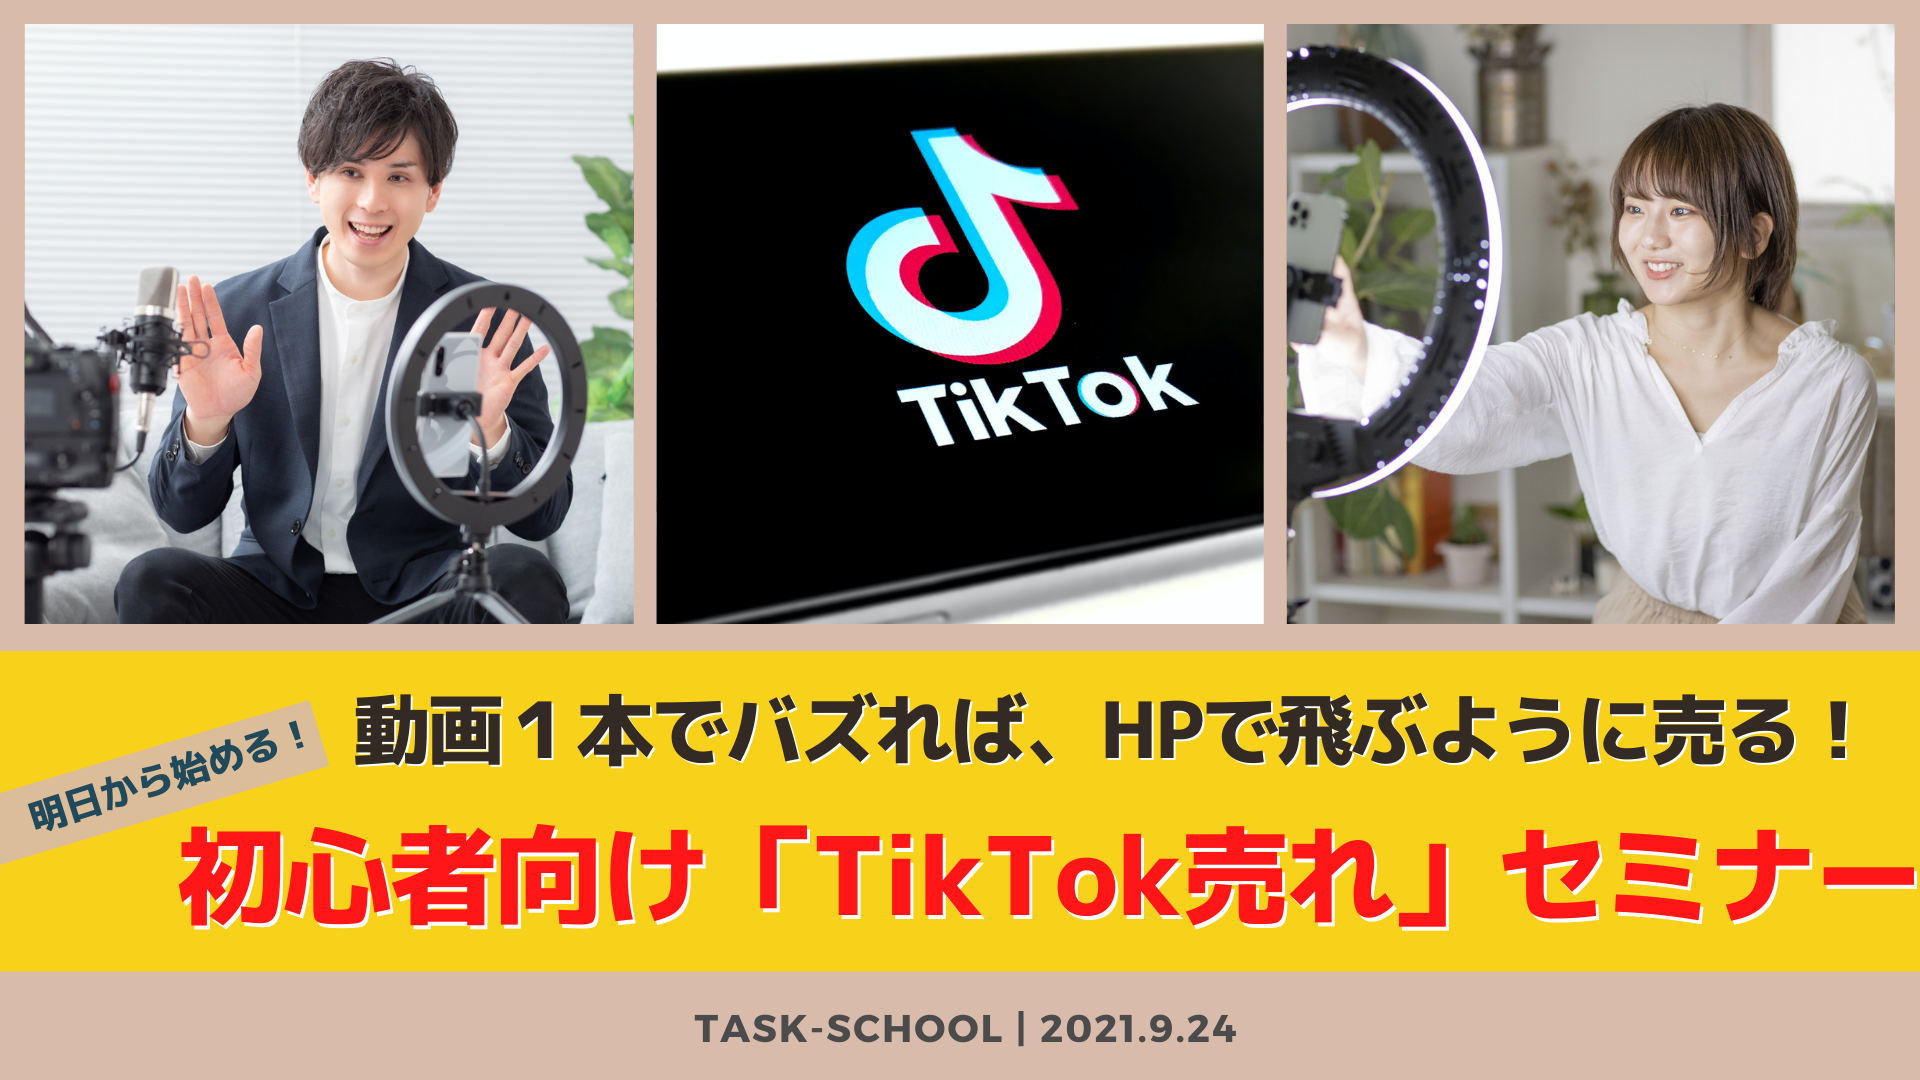 9/24　動画１本でバズれば、HPで飛ぶように売る！ 明日から始める！初心者向け「TikTok売れ」セミナー